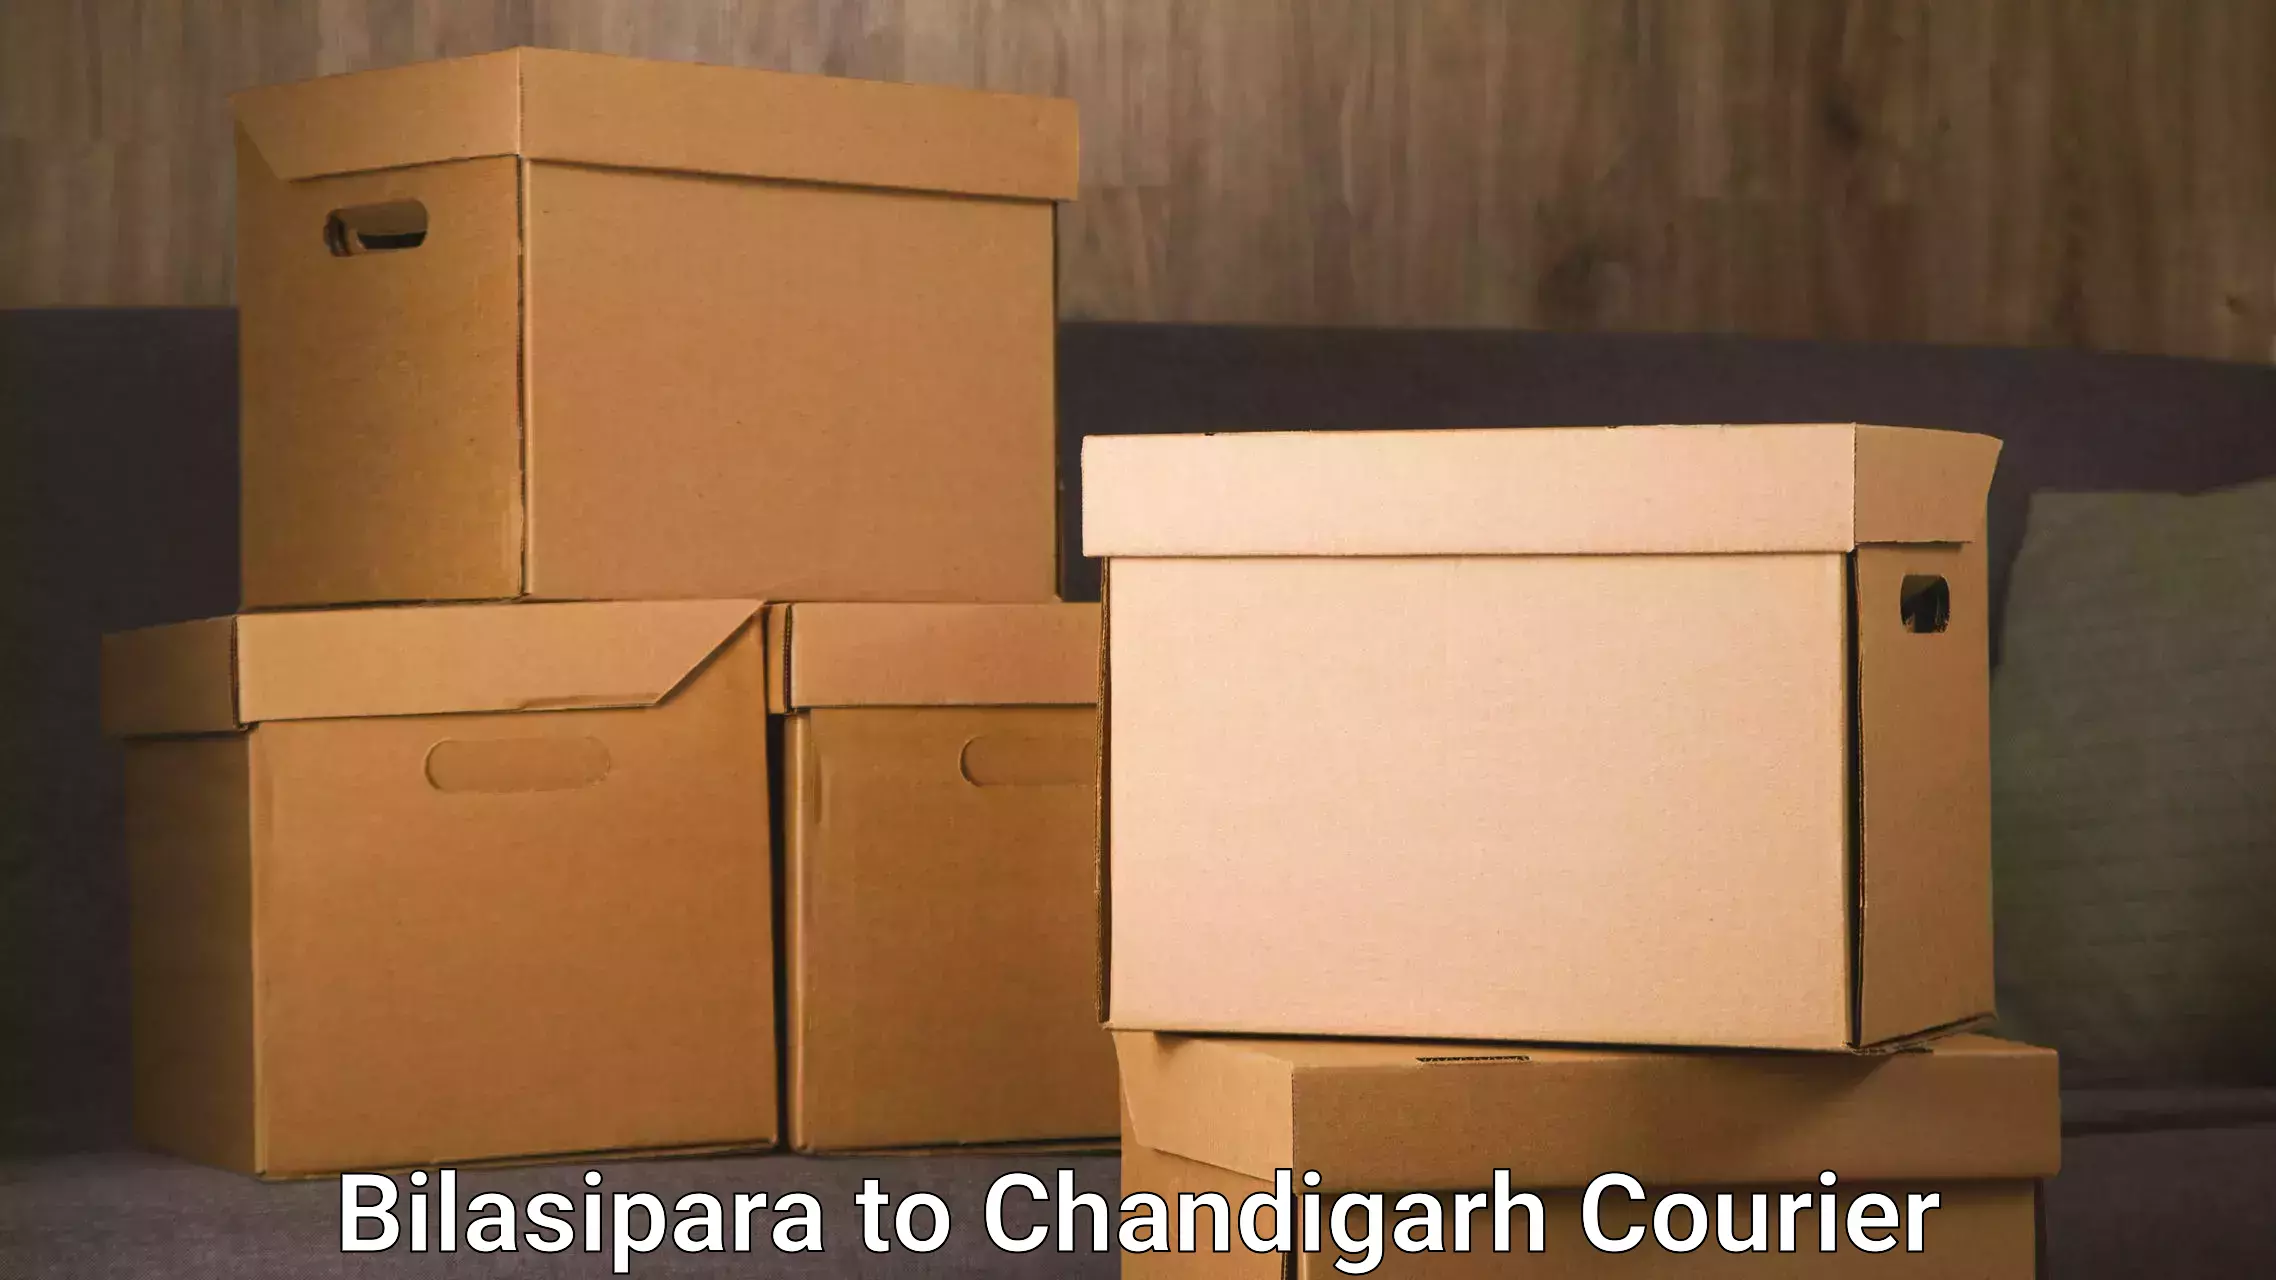 Efficient cargo handling Bilasipara to Chandigarh